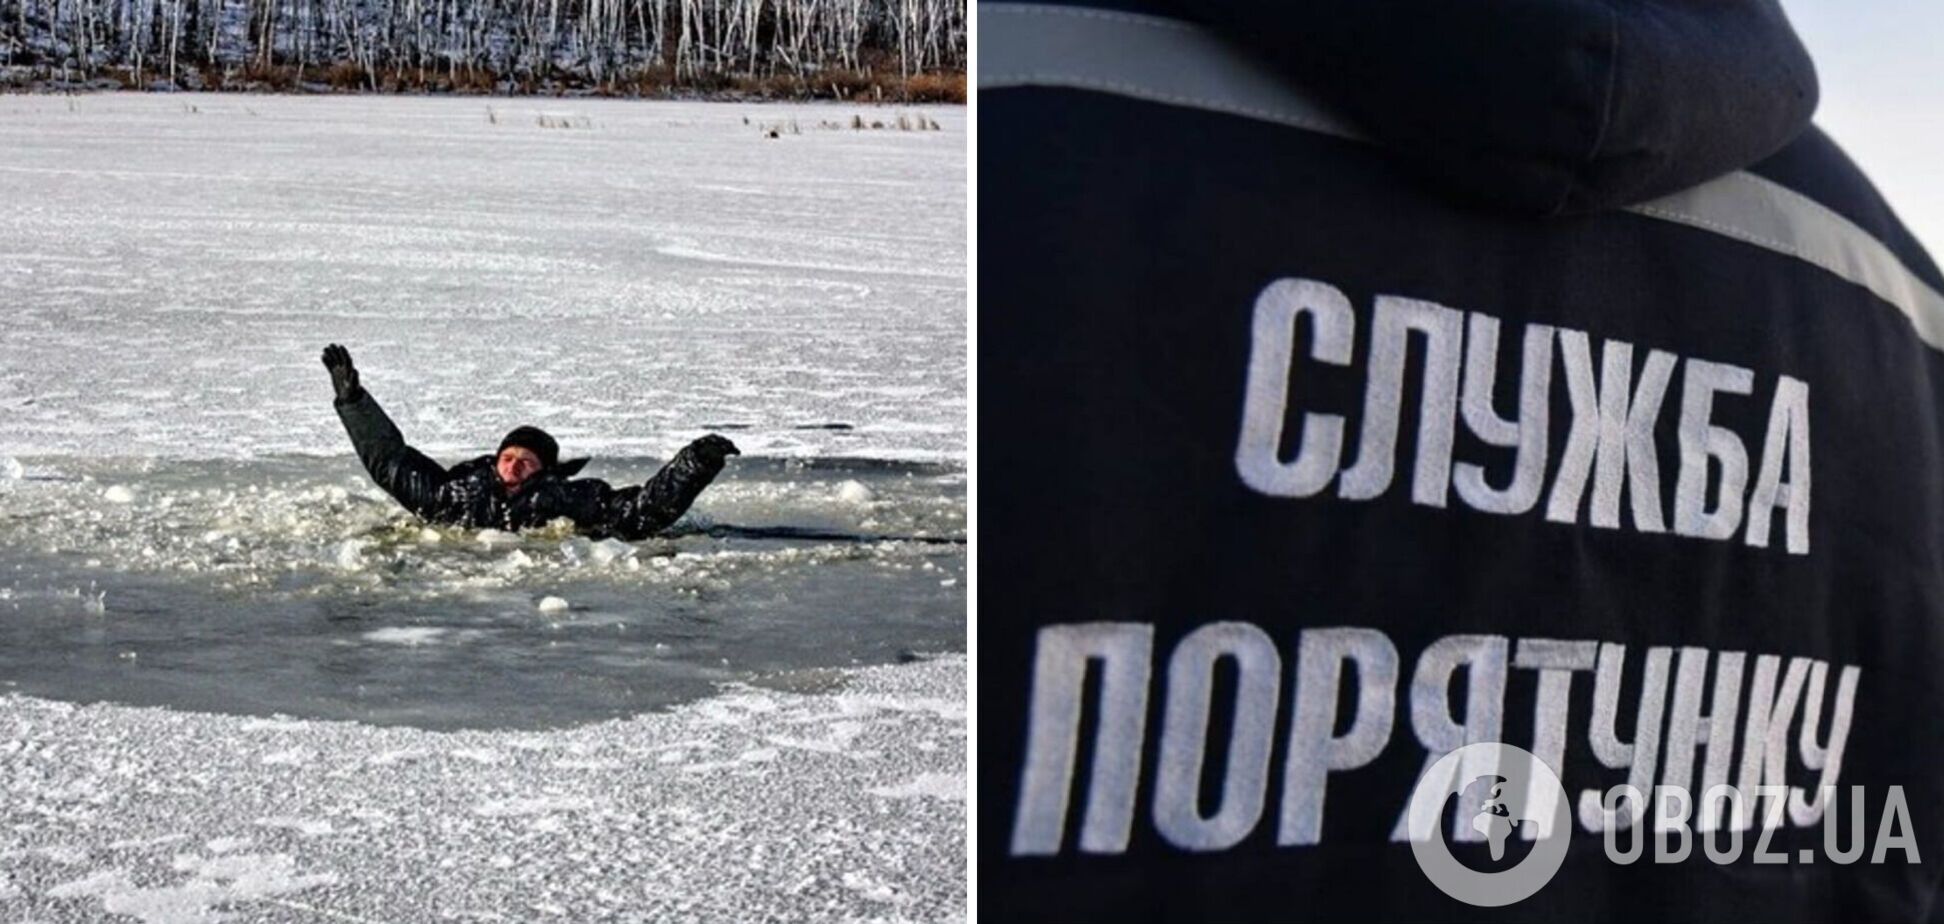 На Дніпропетровщині під час риболовлі під кригу провалилися двоє чоловіків, один потонув. Фото та деталі трагедії